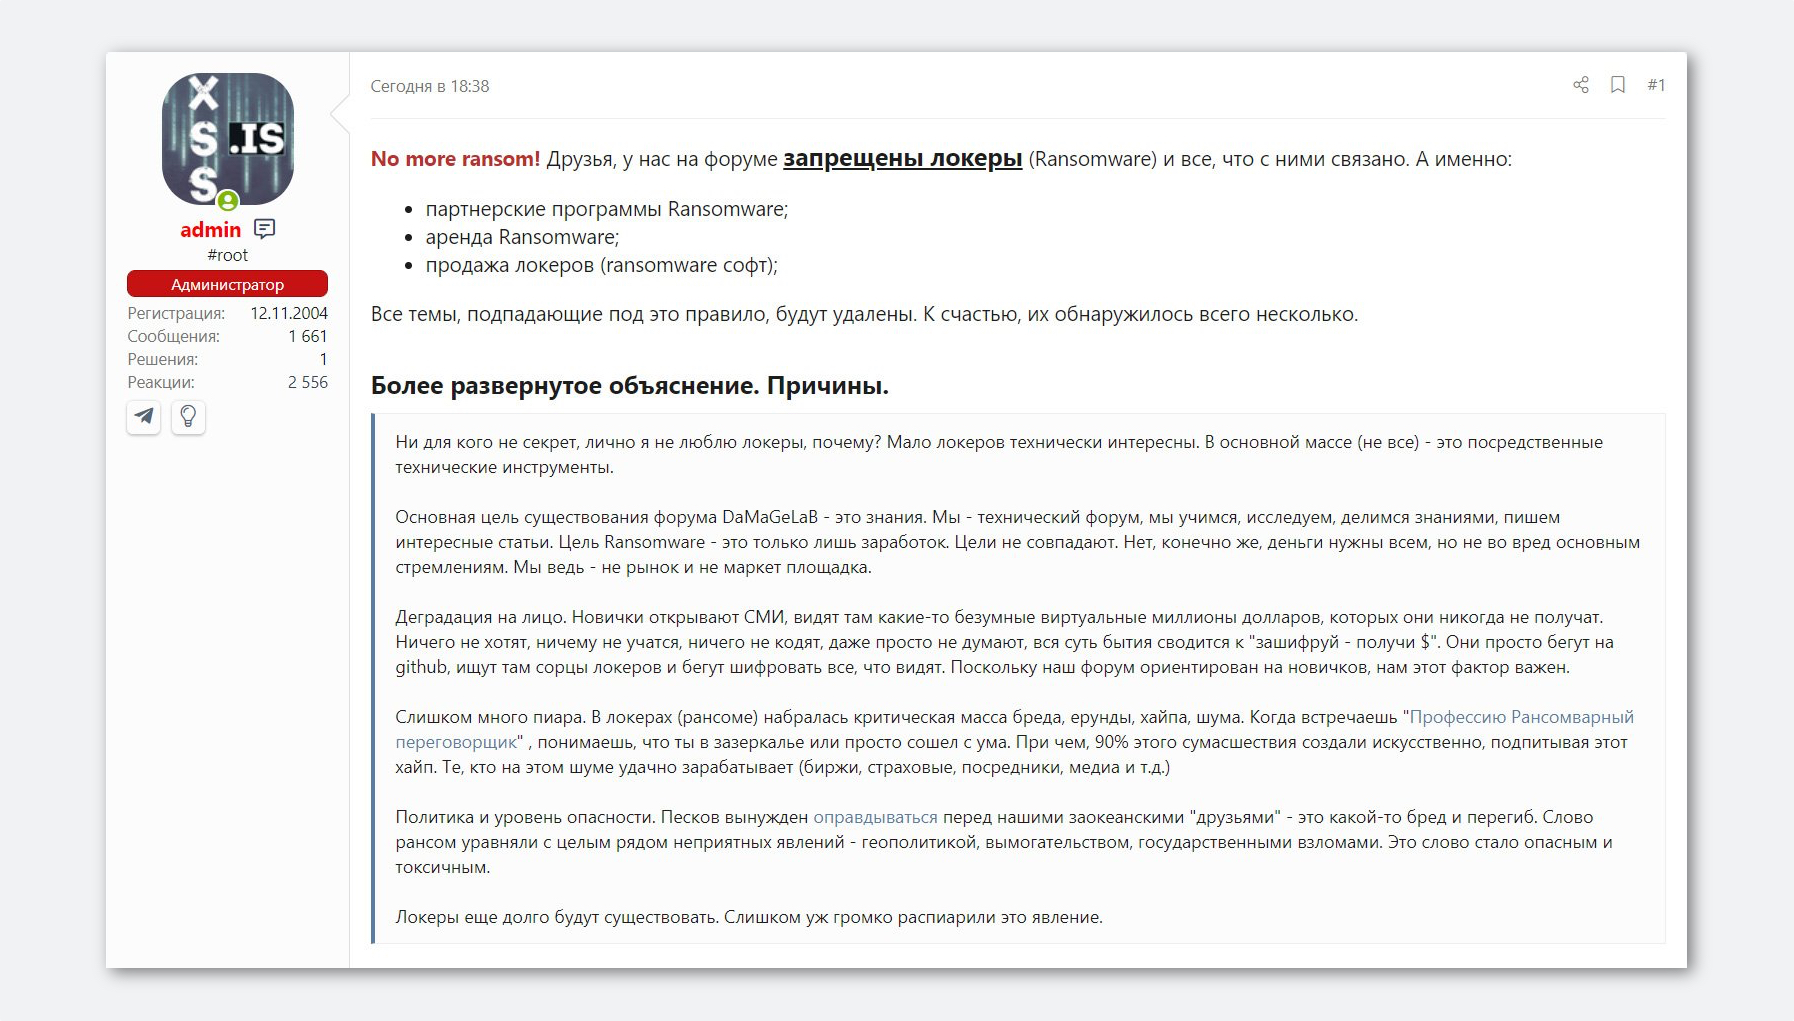 Популярный русскоязычный форум для хакеров запретил обсуждение вирусов-вымогателей 1